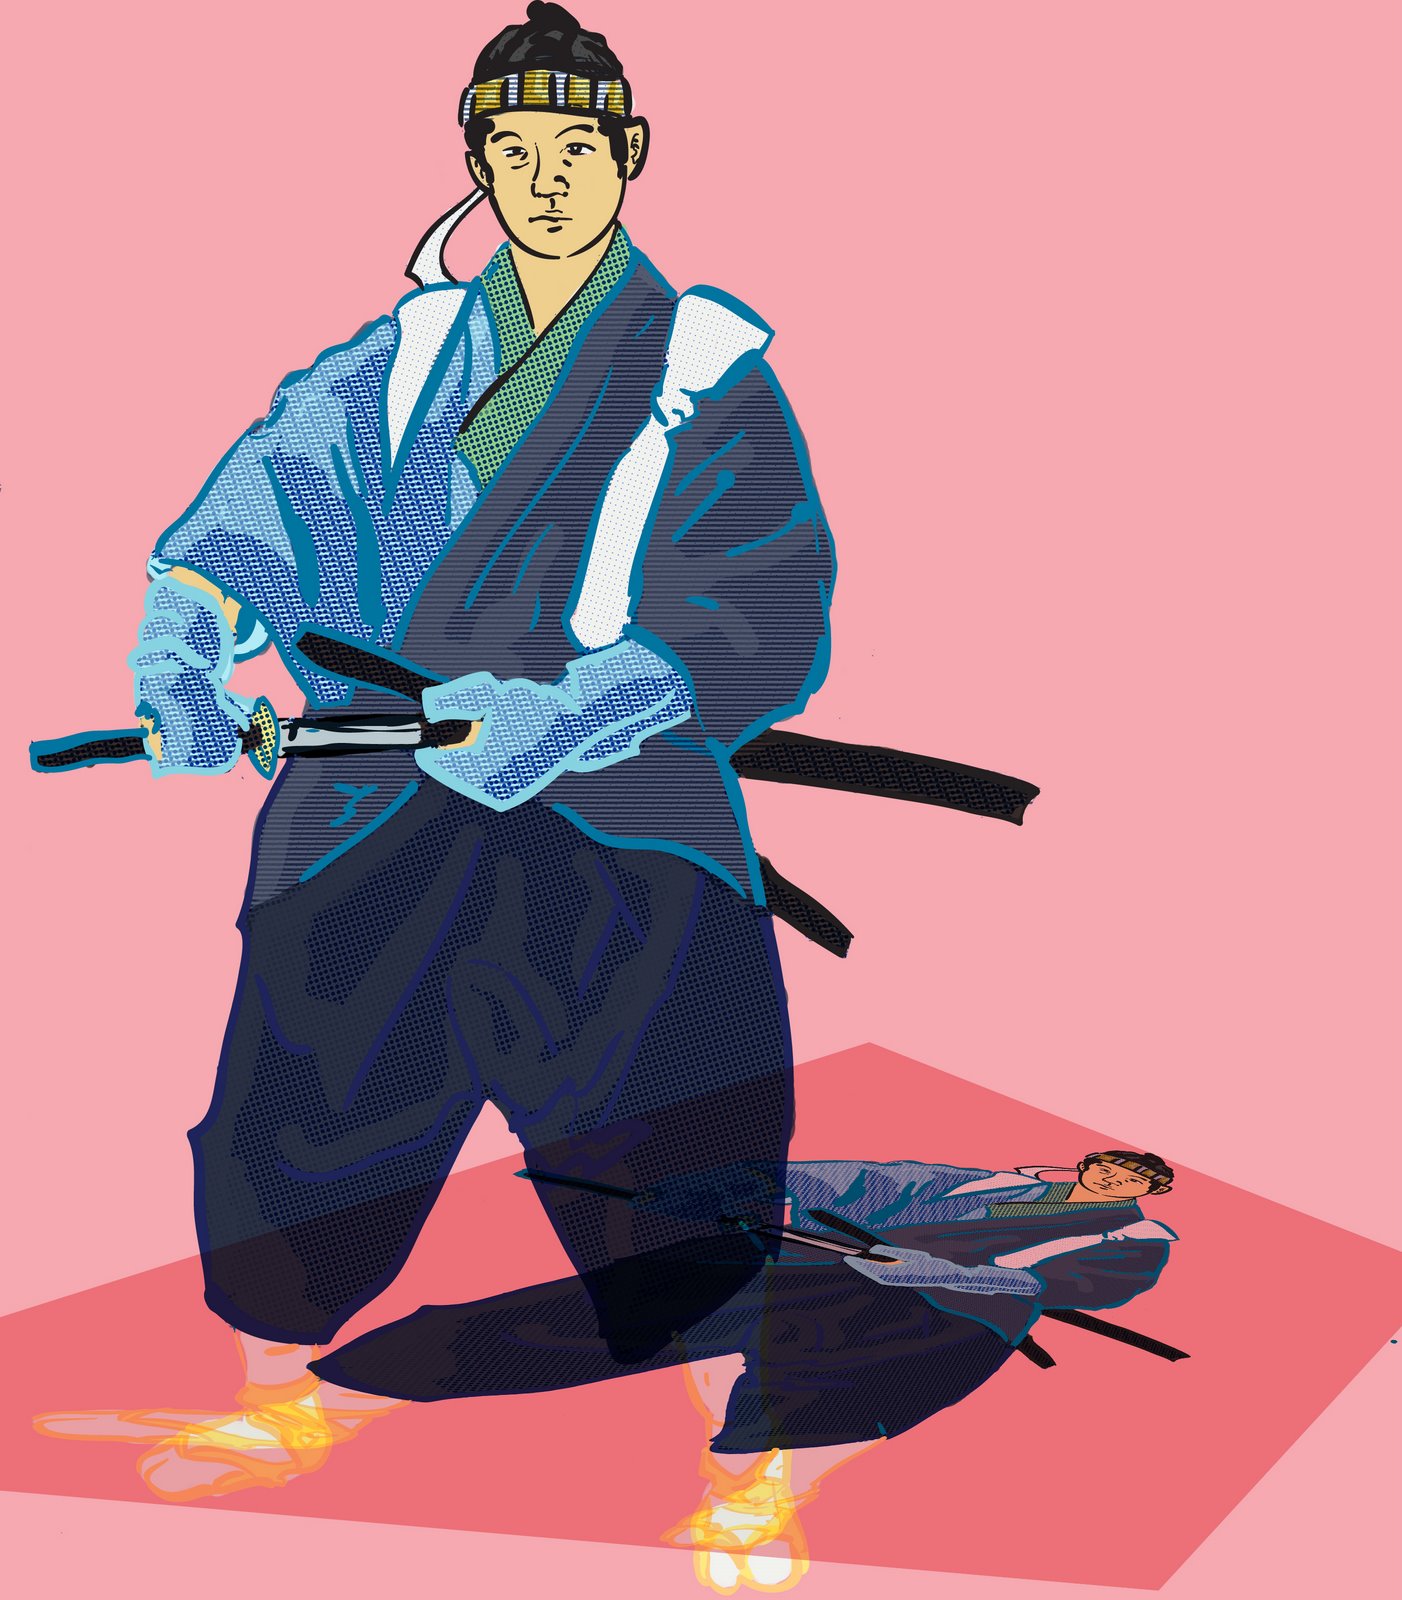 [samurai...(partshadow).jpg]